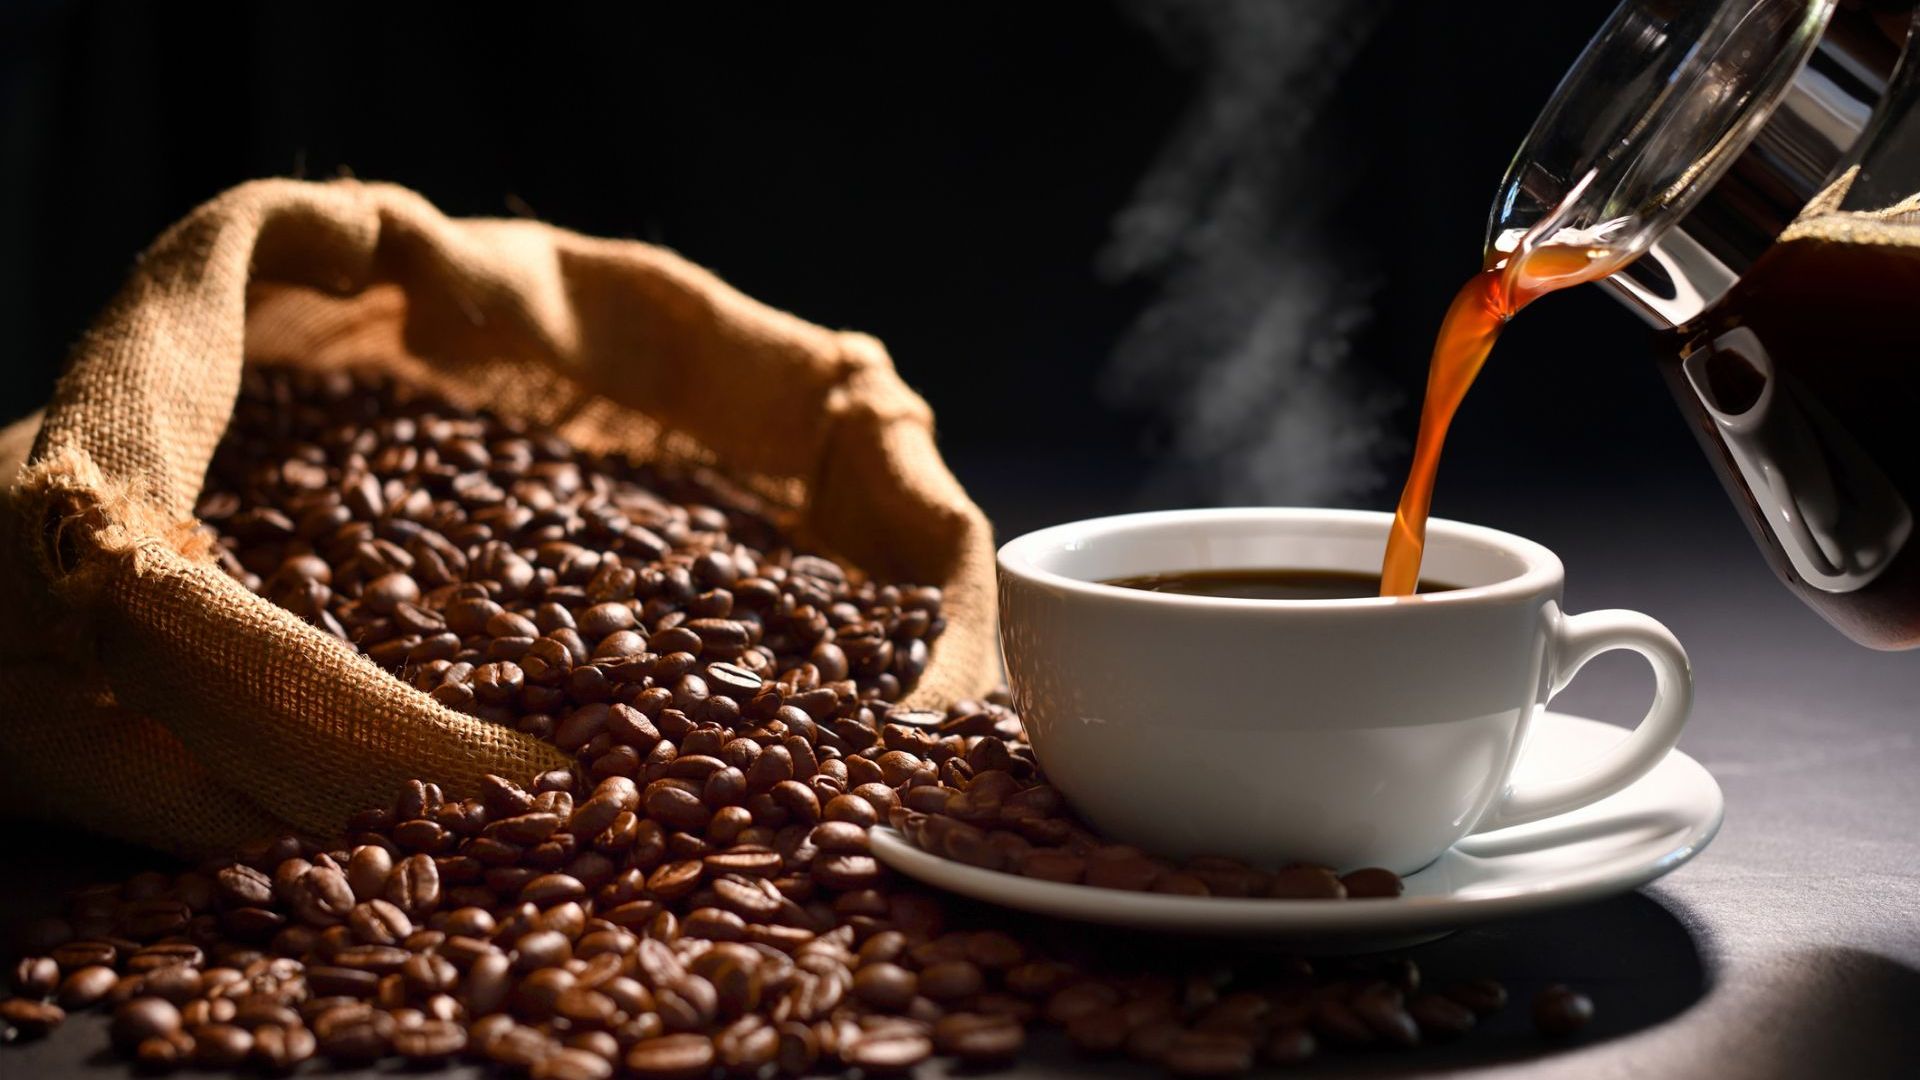 Консумацията на кафе намалява риска от Алцхаймер